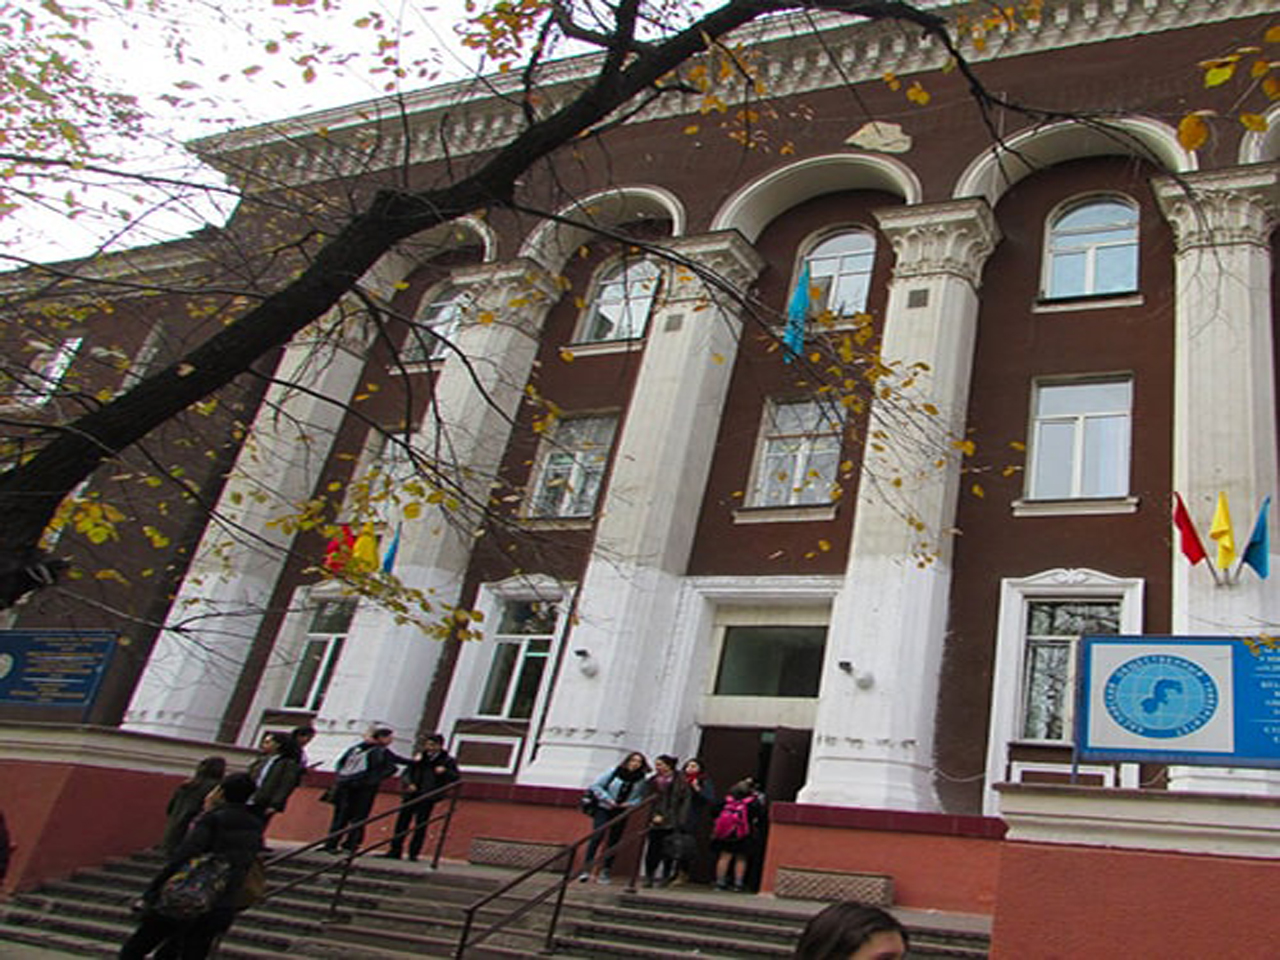 Колледж Әділет - Адилет (Адылет) колледж города Алматы